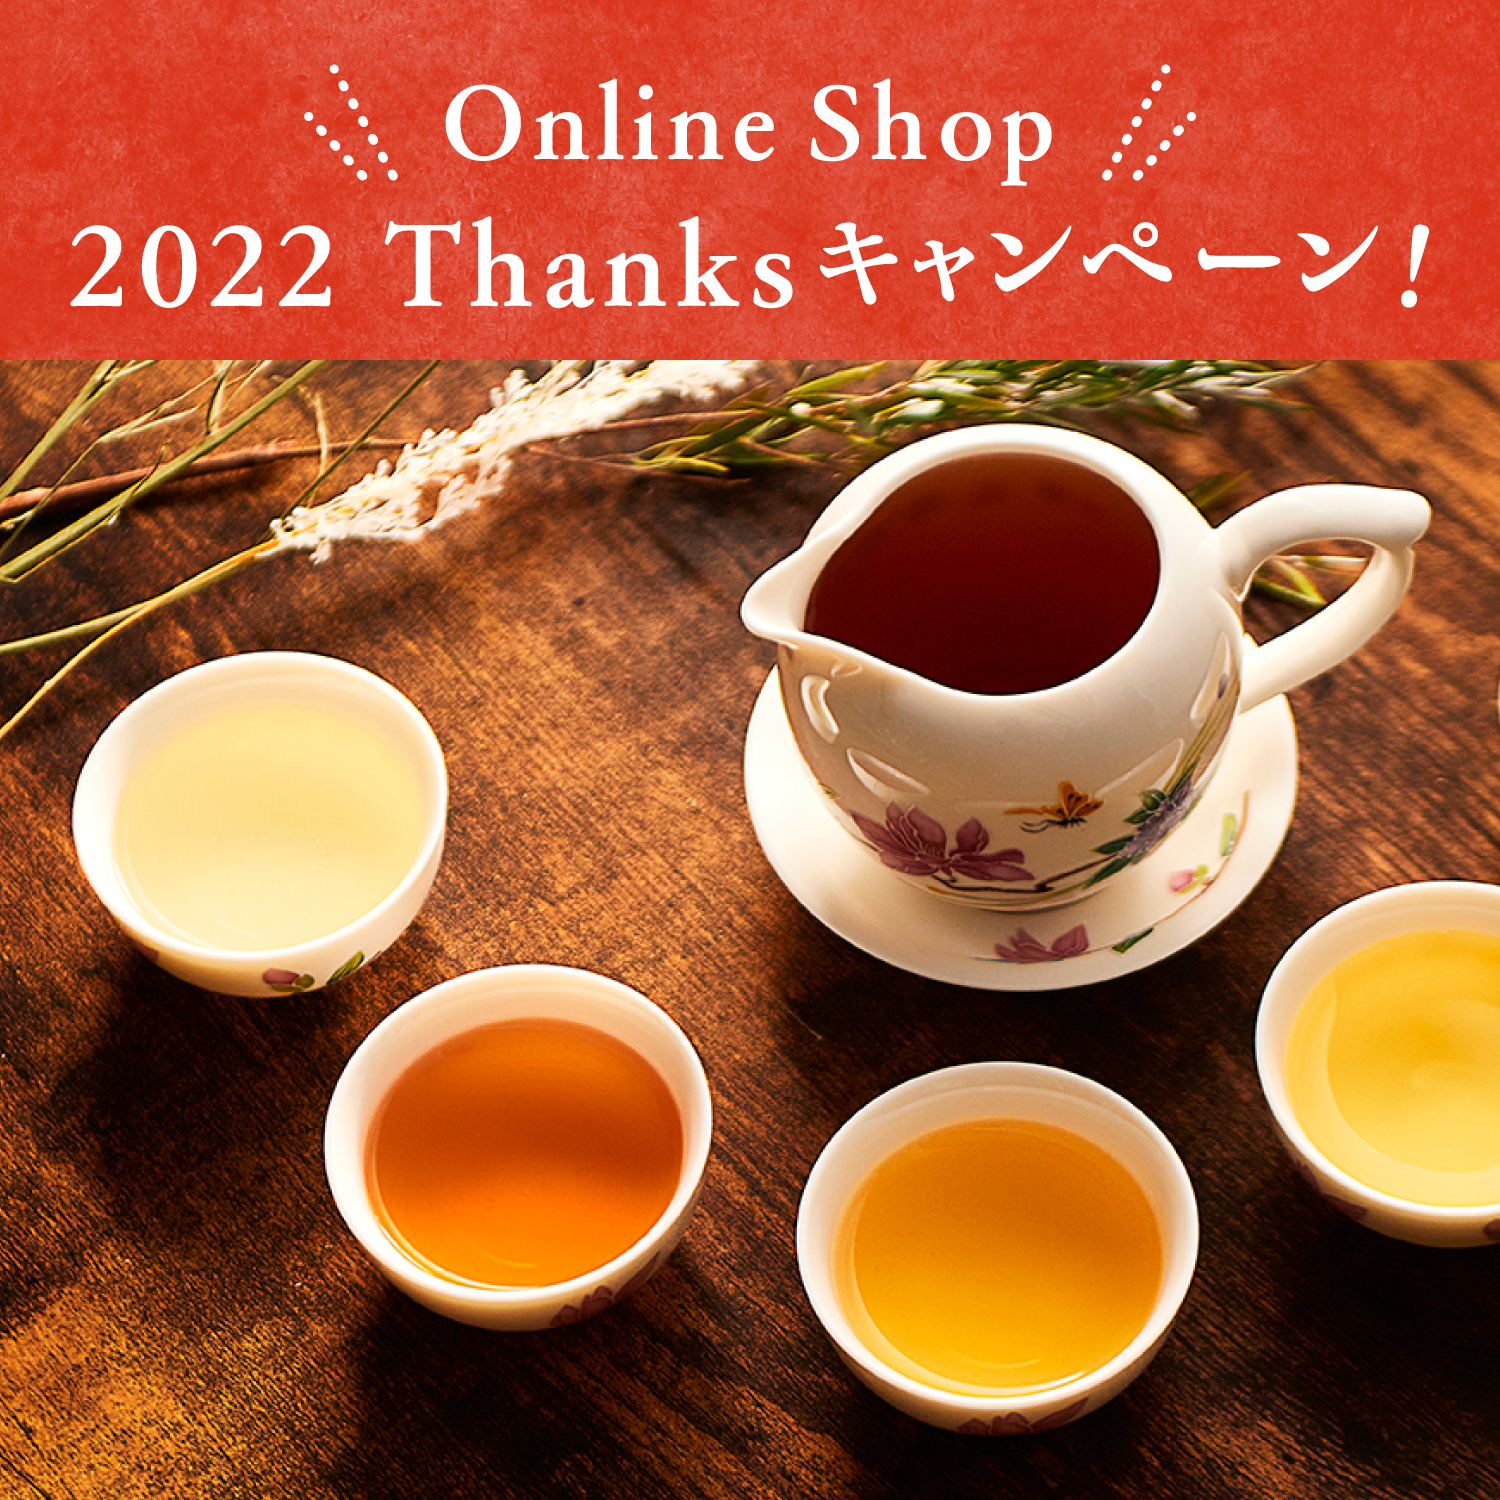 【台湾甜商店Online Shop 2022 Thanksキャンペーン】